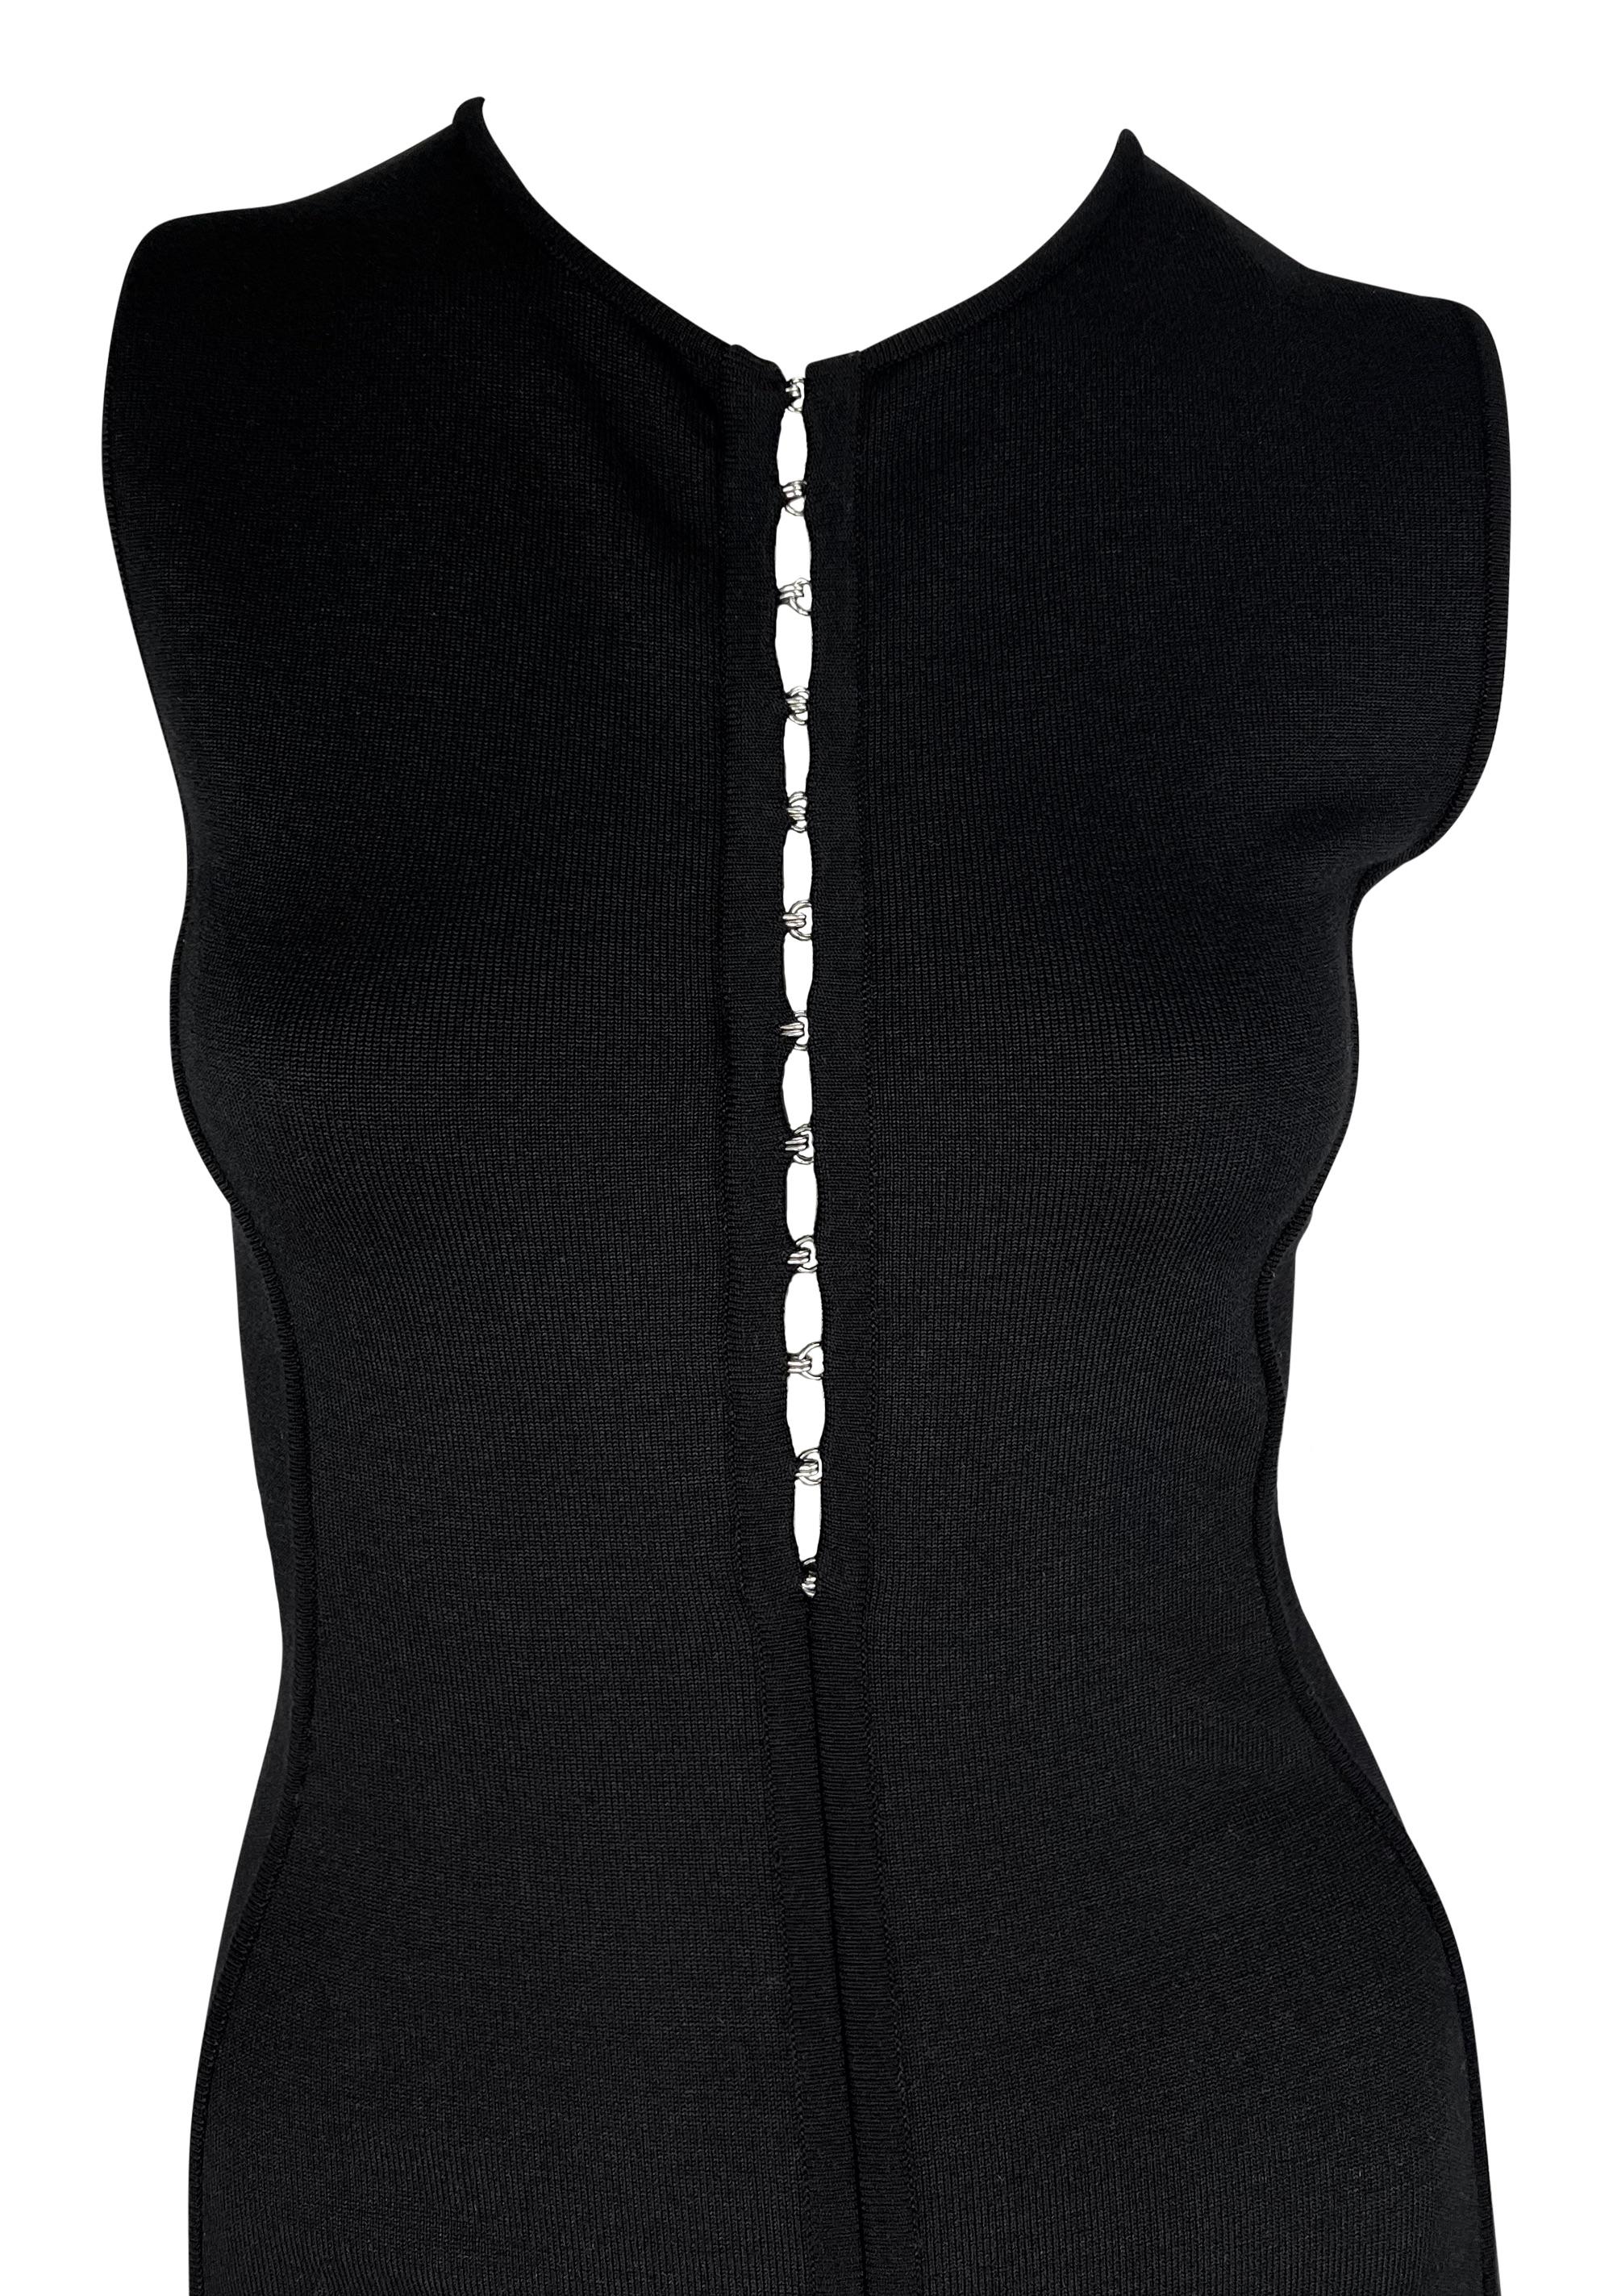 Donatella Versace a créé cette robe bodycon en maille noire Gianni Versace pour la collection printemps/été 2002. Cette petite robe noire sans manches est dotée d'une encolure ras du cou et d'une fermeture à crochets argentés sur le devant. Simple,